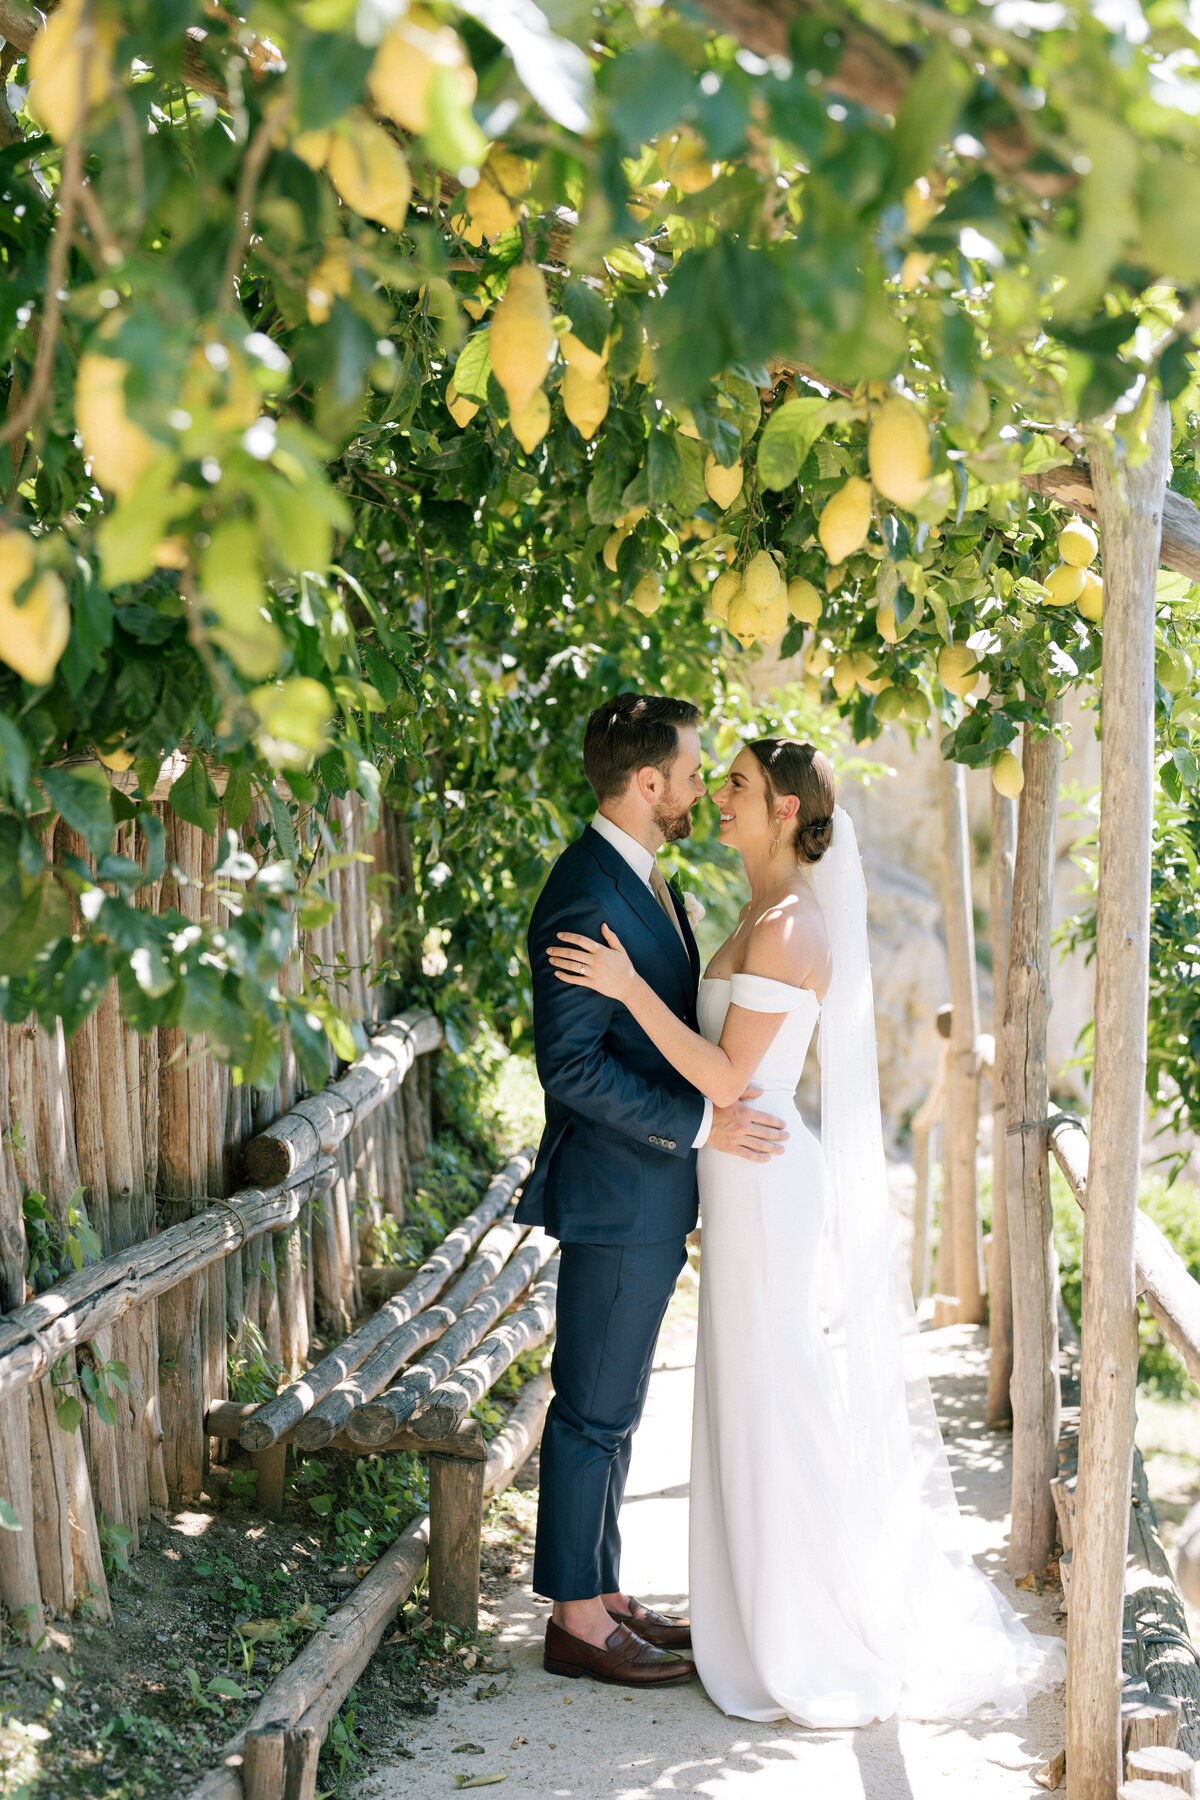 Bride and groom in lemon groves in Positano